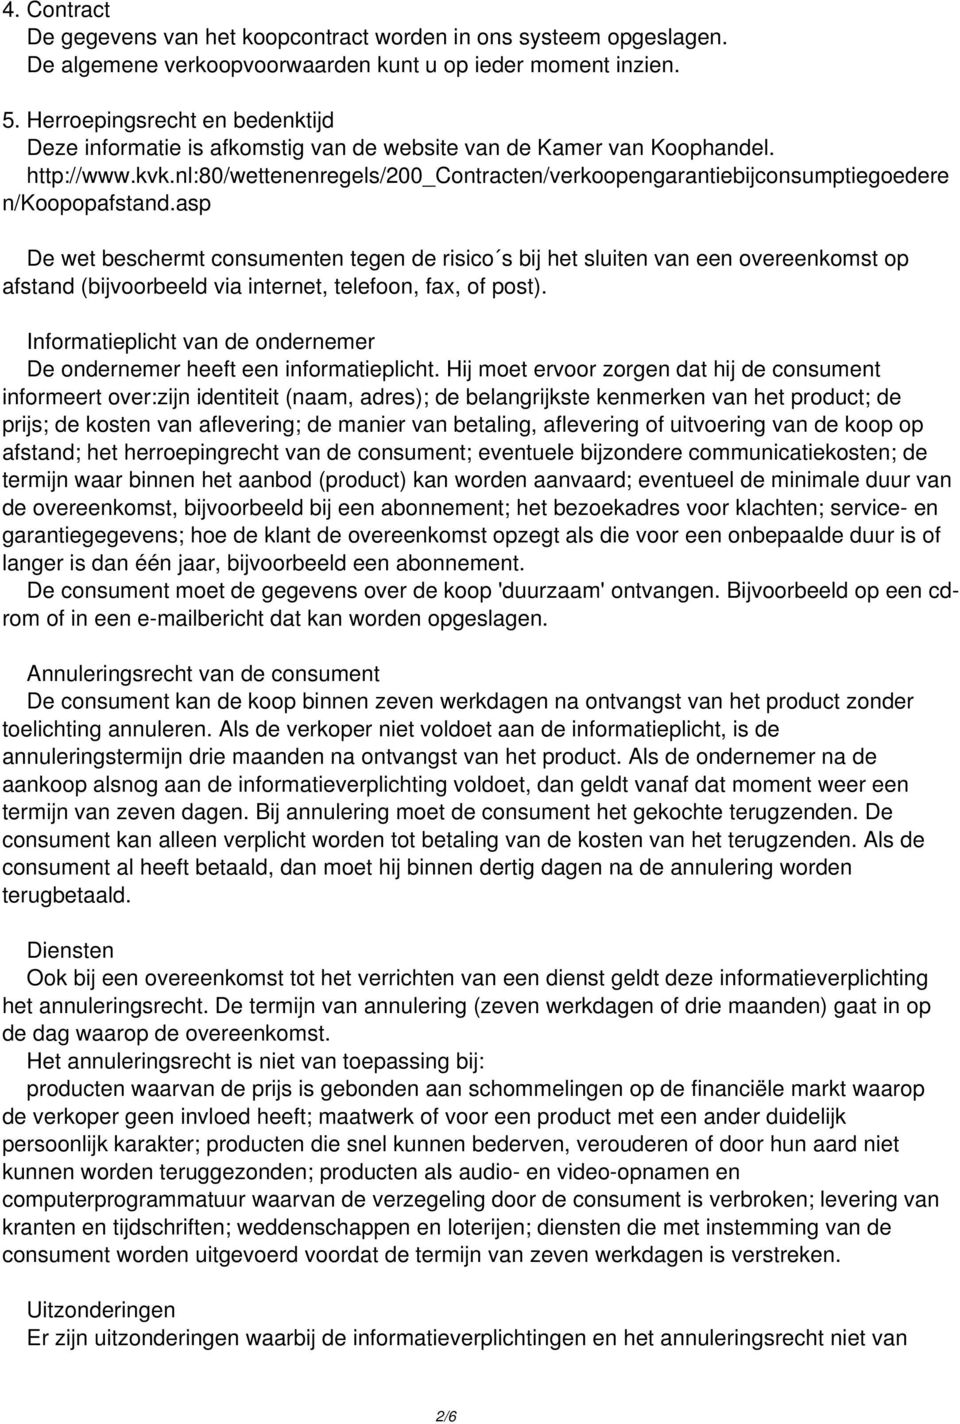 nl:80/wettenenregels/200_contracten/verkoopengarantiebijconsumptiegoedere n/koopopafstand.